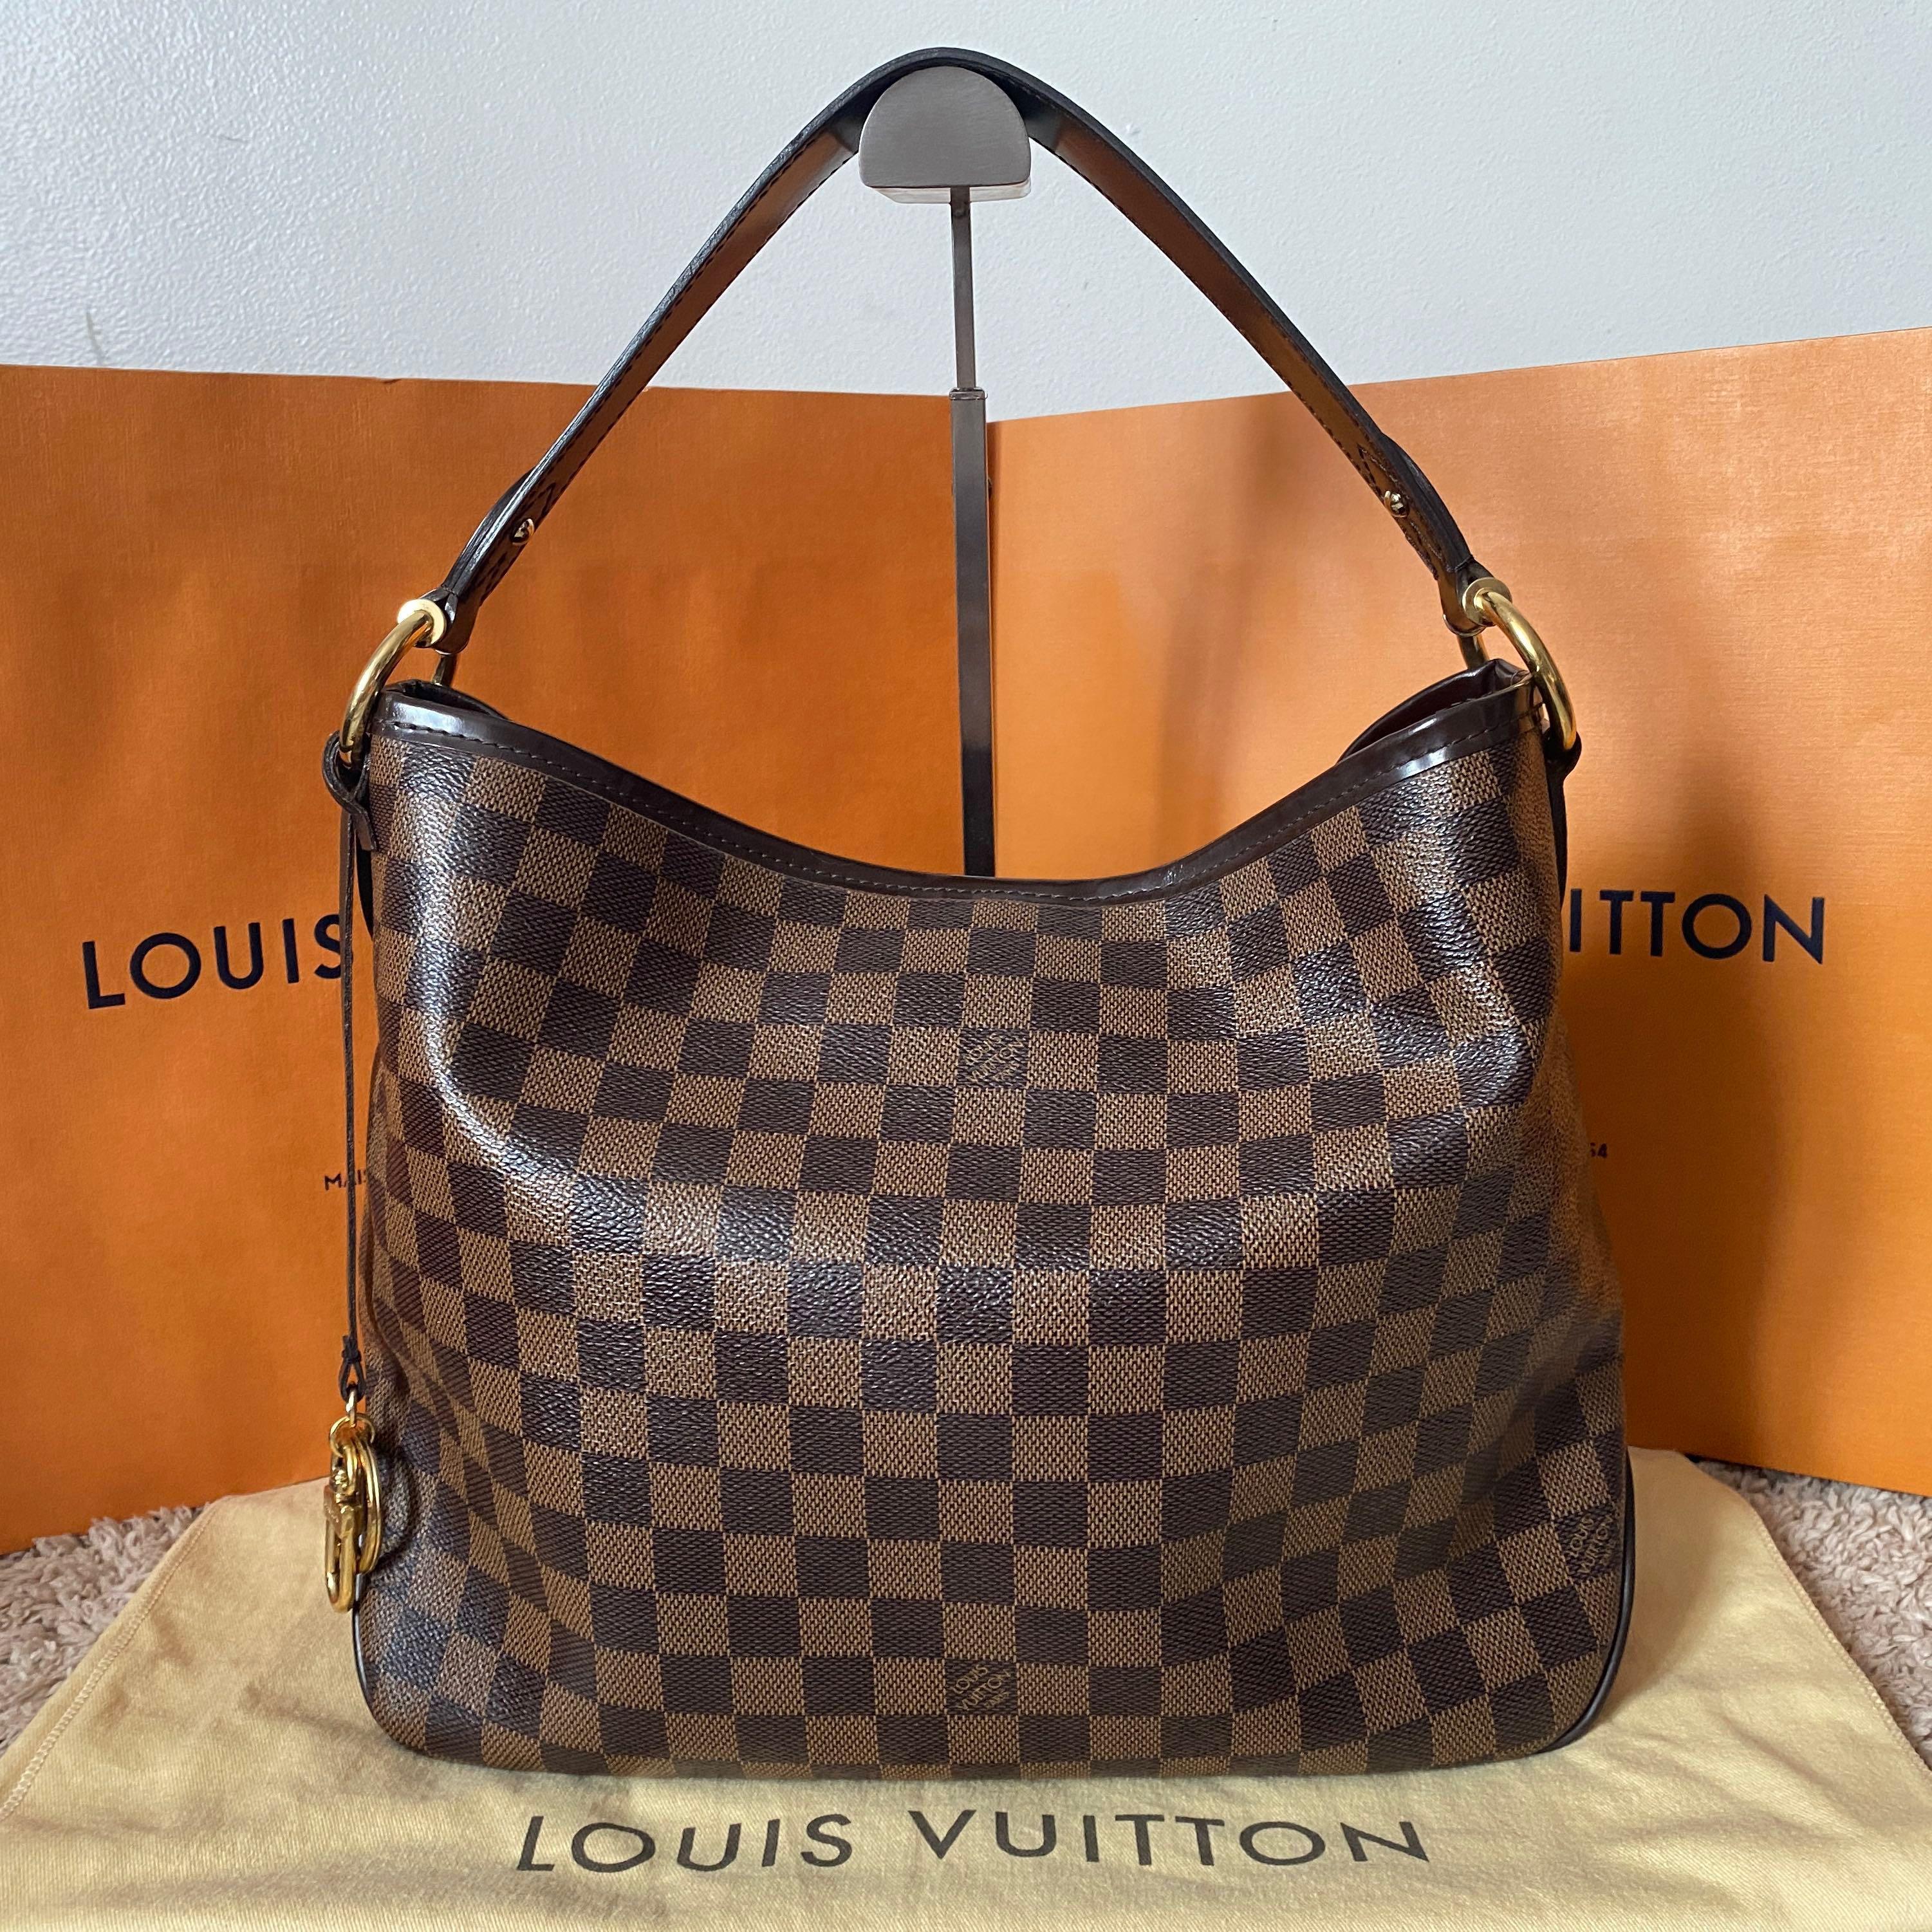 Louis Vuitton Delightful Pm Reviews